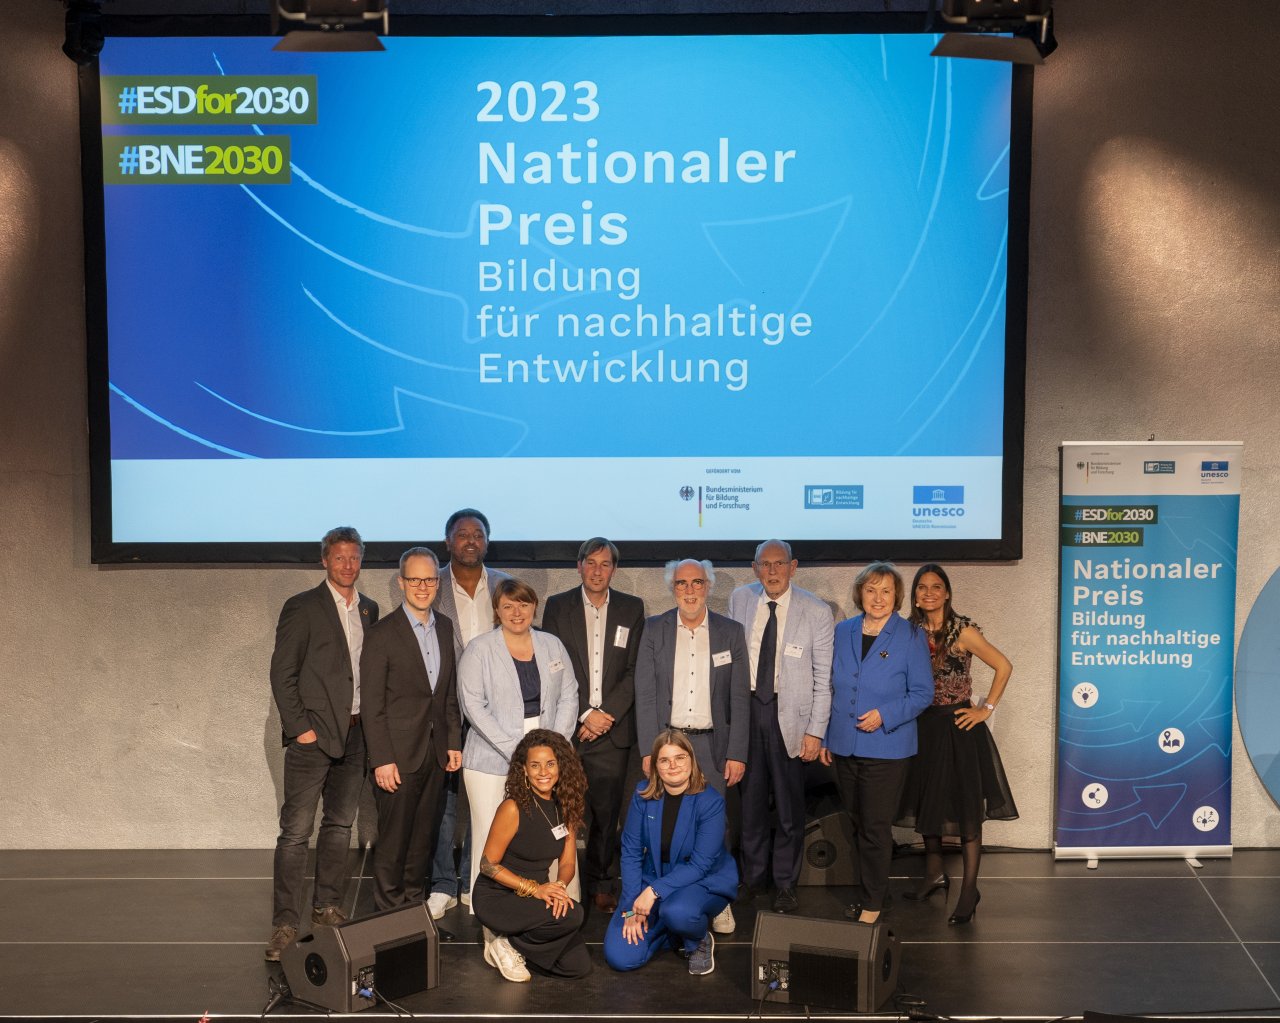 Mitglieder der Jury des BNE-Preises, Maria Böhmer und Jens Brandenburg stehen auf einer Bühne, hinter den 11 Personen stehen Banner mit der Aufschrift "2023 Nationaler Preis - Bildung für nachhaltige Entwicklung"